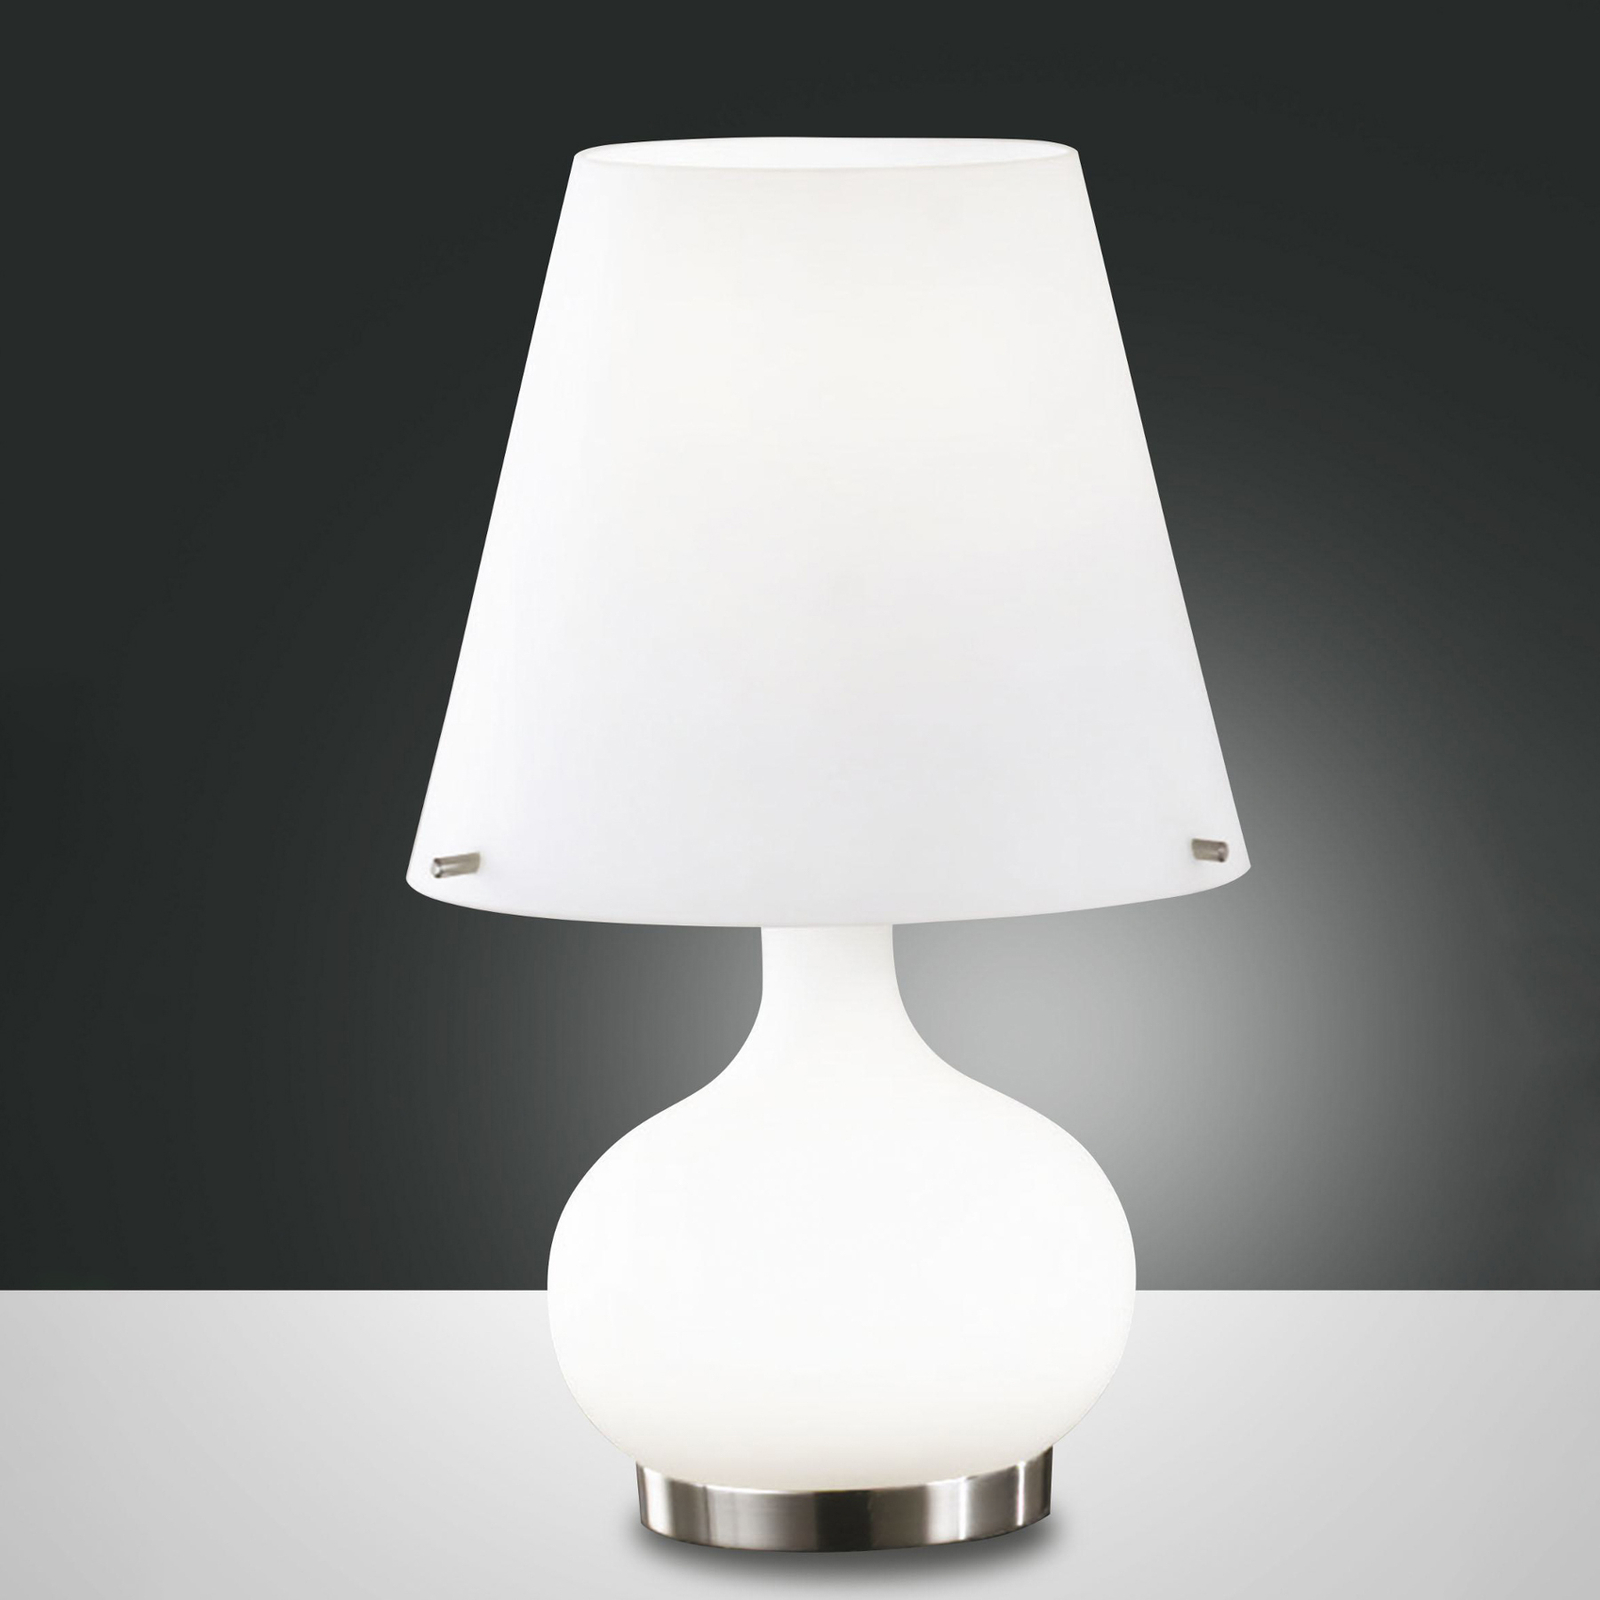 Настолна лампа Ade, височина 33 см, бяла, стъкло